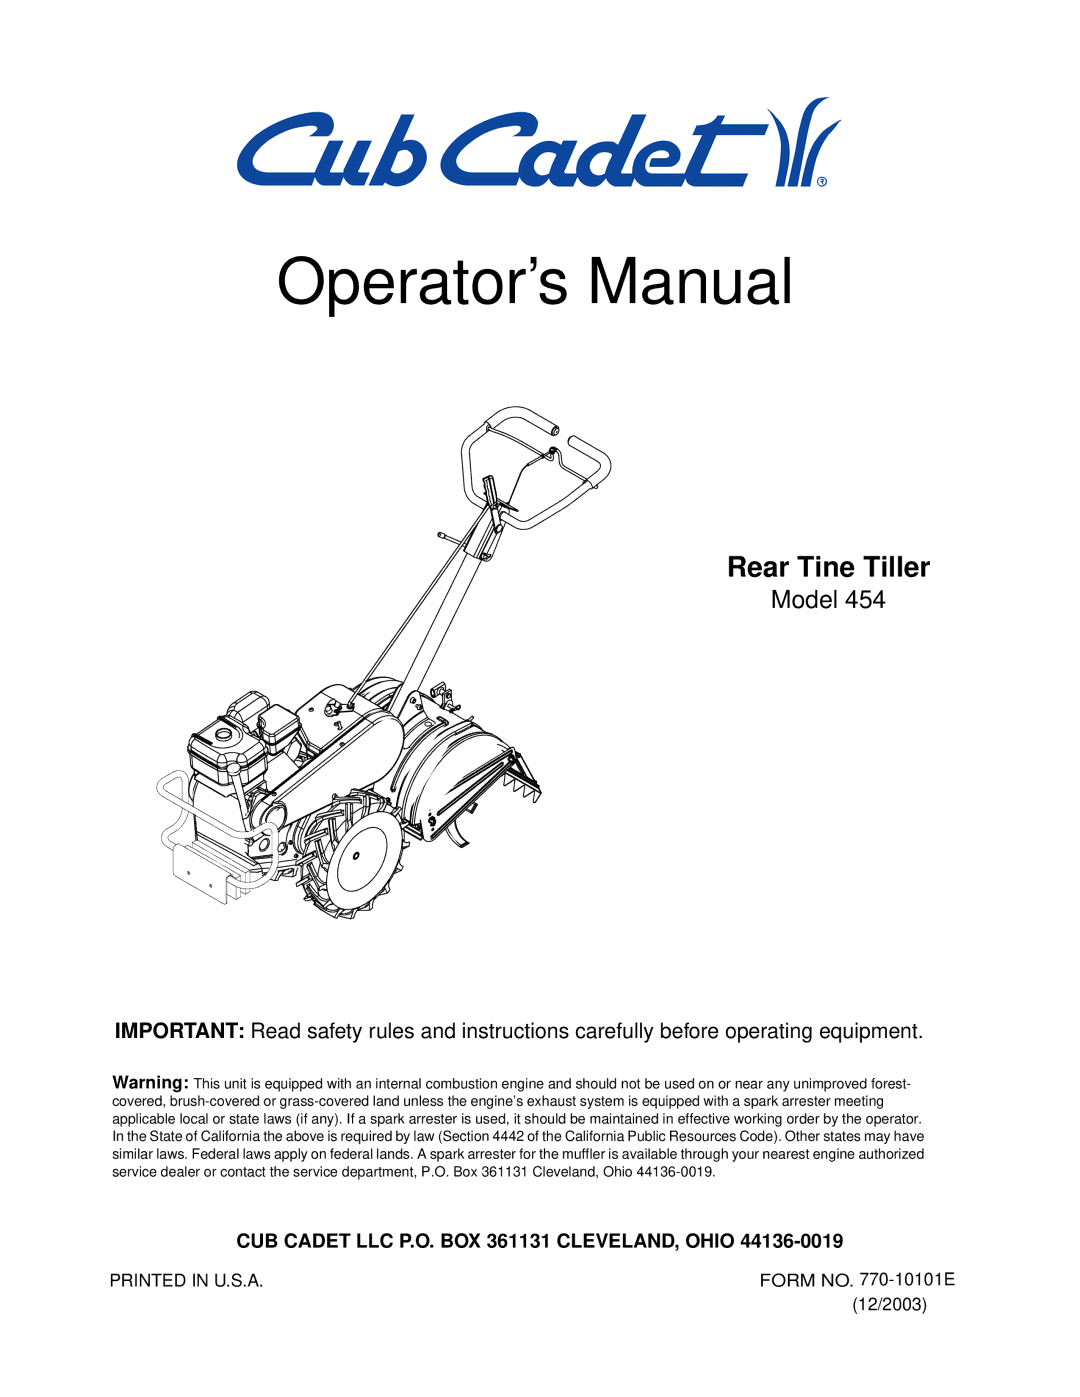 Cub Cadet 454 manual Operator’s Manual 